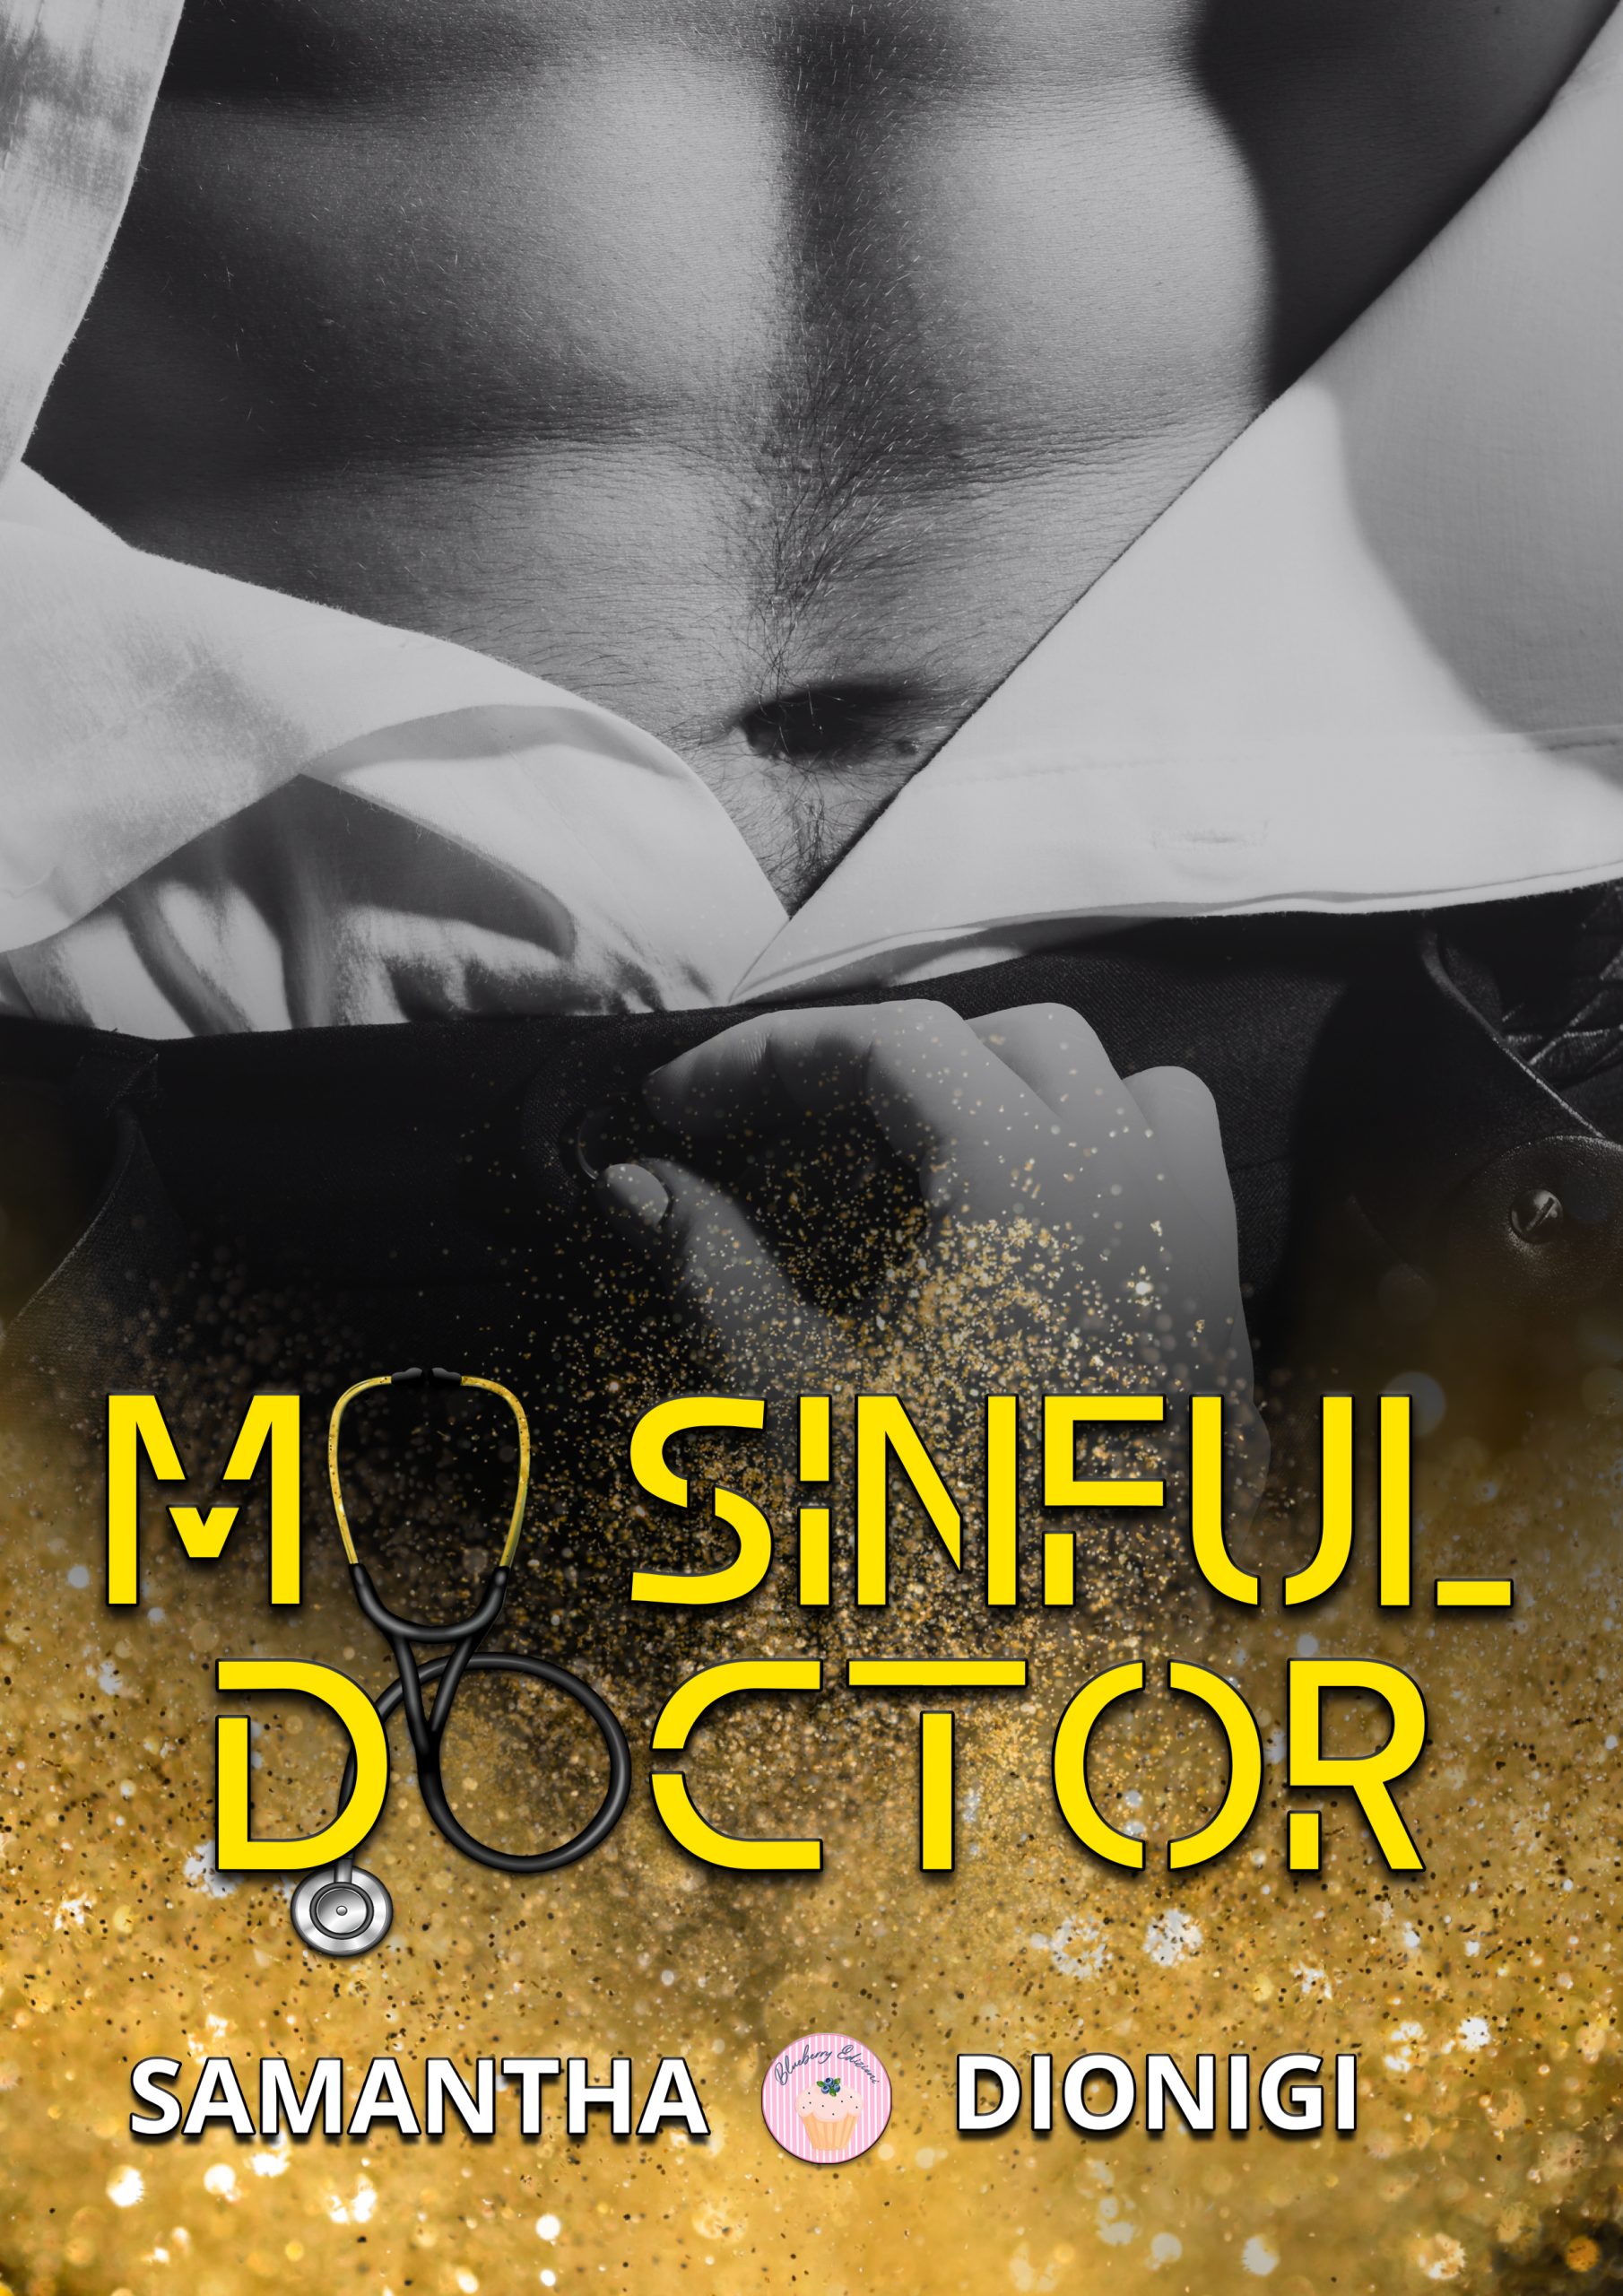 Segnalazione di uscita “My Sinful Doctor” di Samantha Dionigi